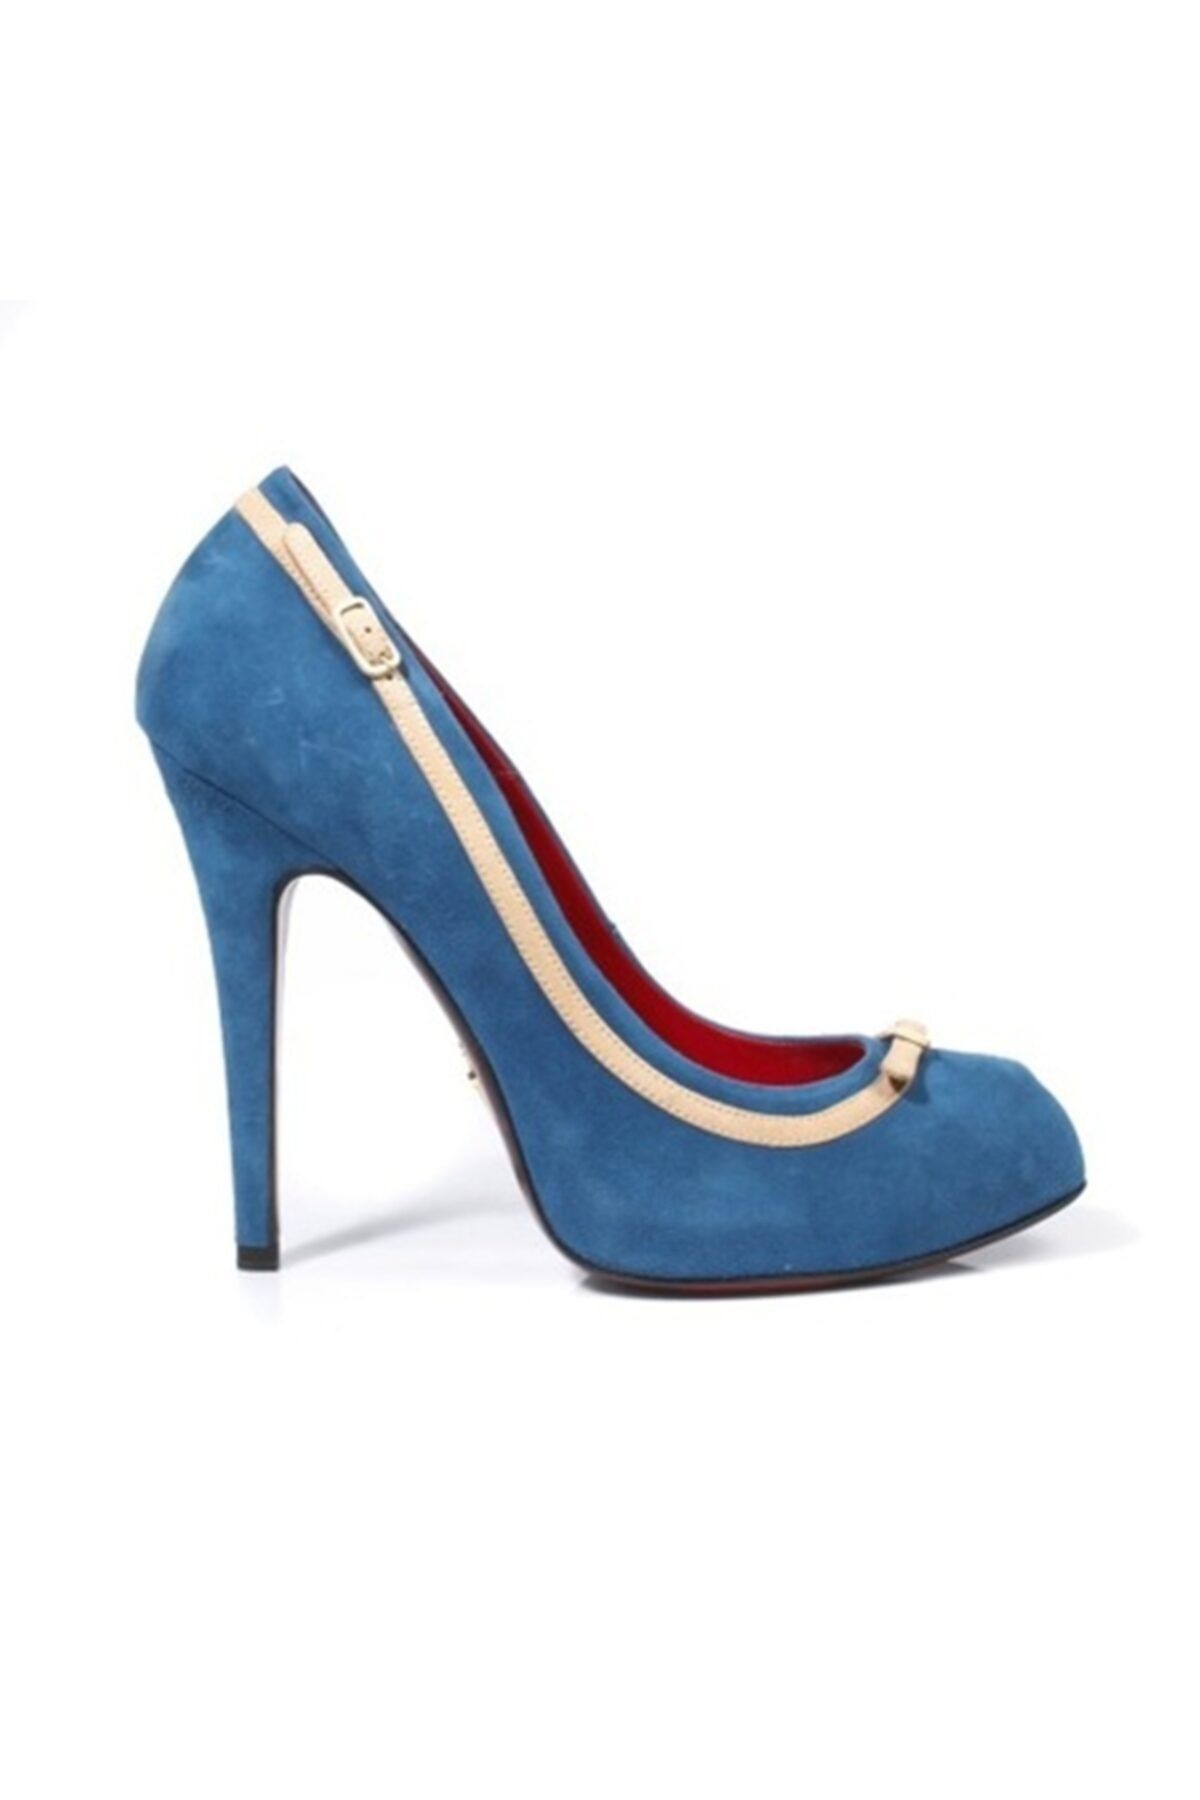 Cesare Paciotti Kadın Topuklu Ayakkabı Mavi 127210